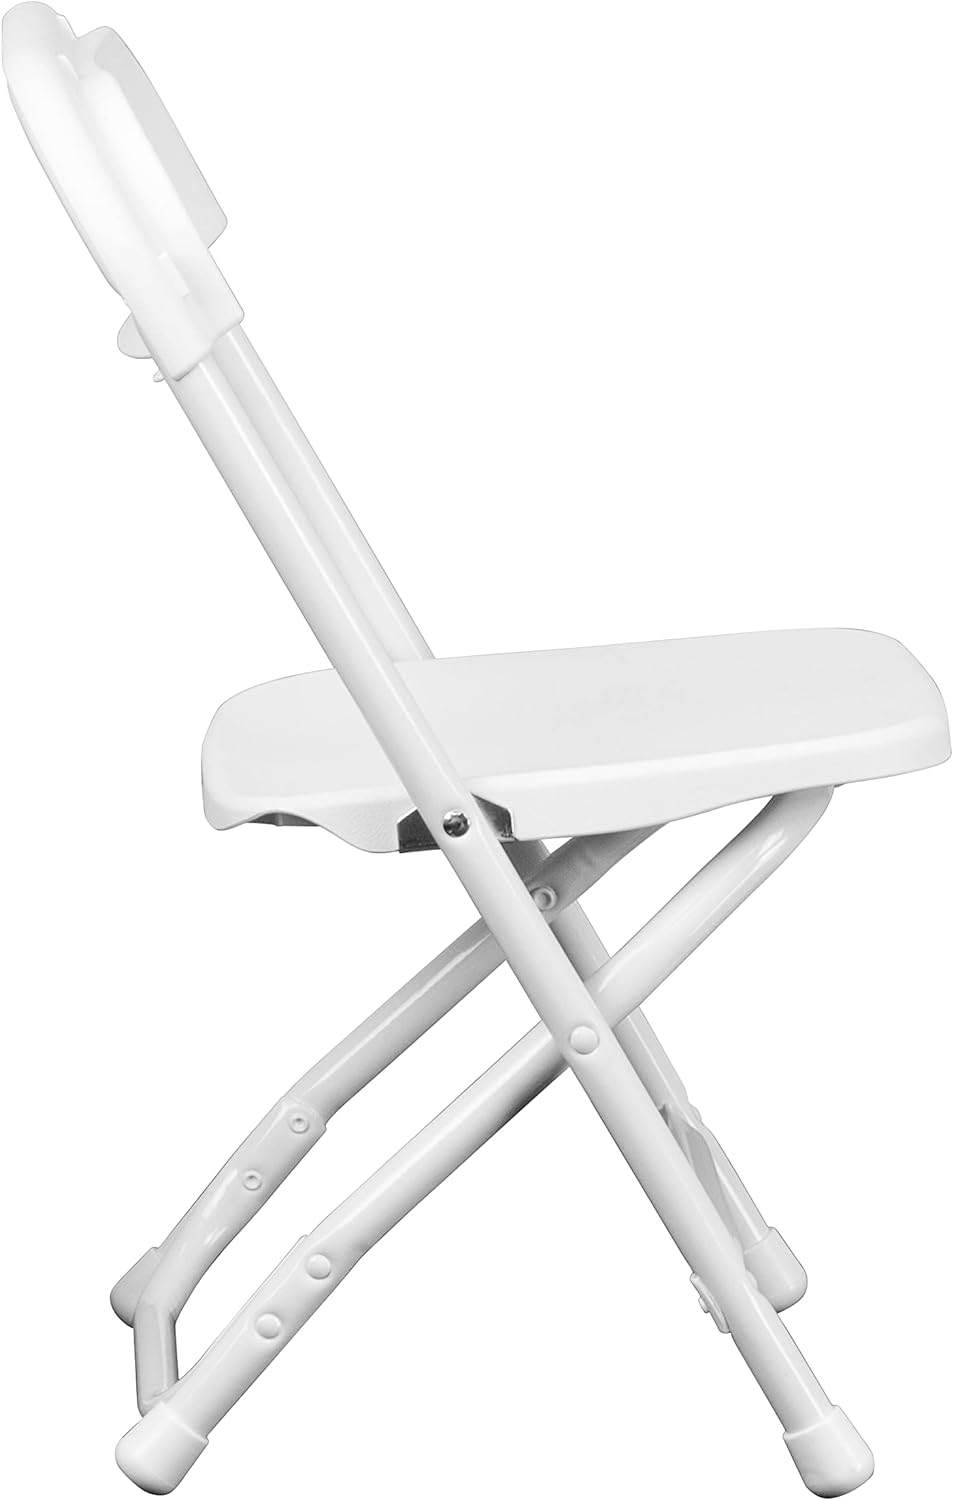  Pack de 8 sillas muebles virola protector de piso blanco  plástico 0.374 in 0.591 in : Herramientas y Mejoras del Hogar